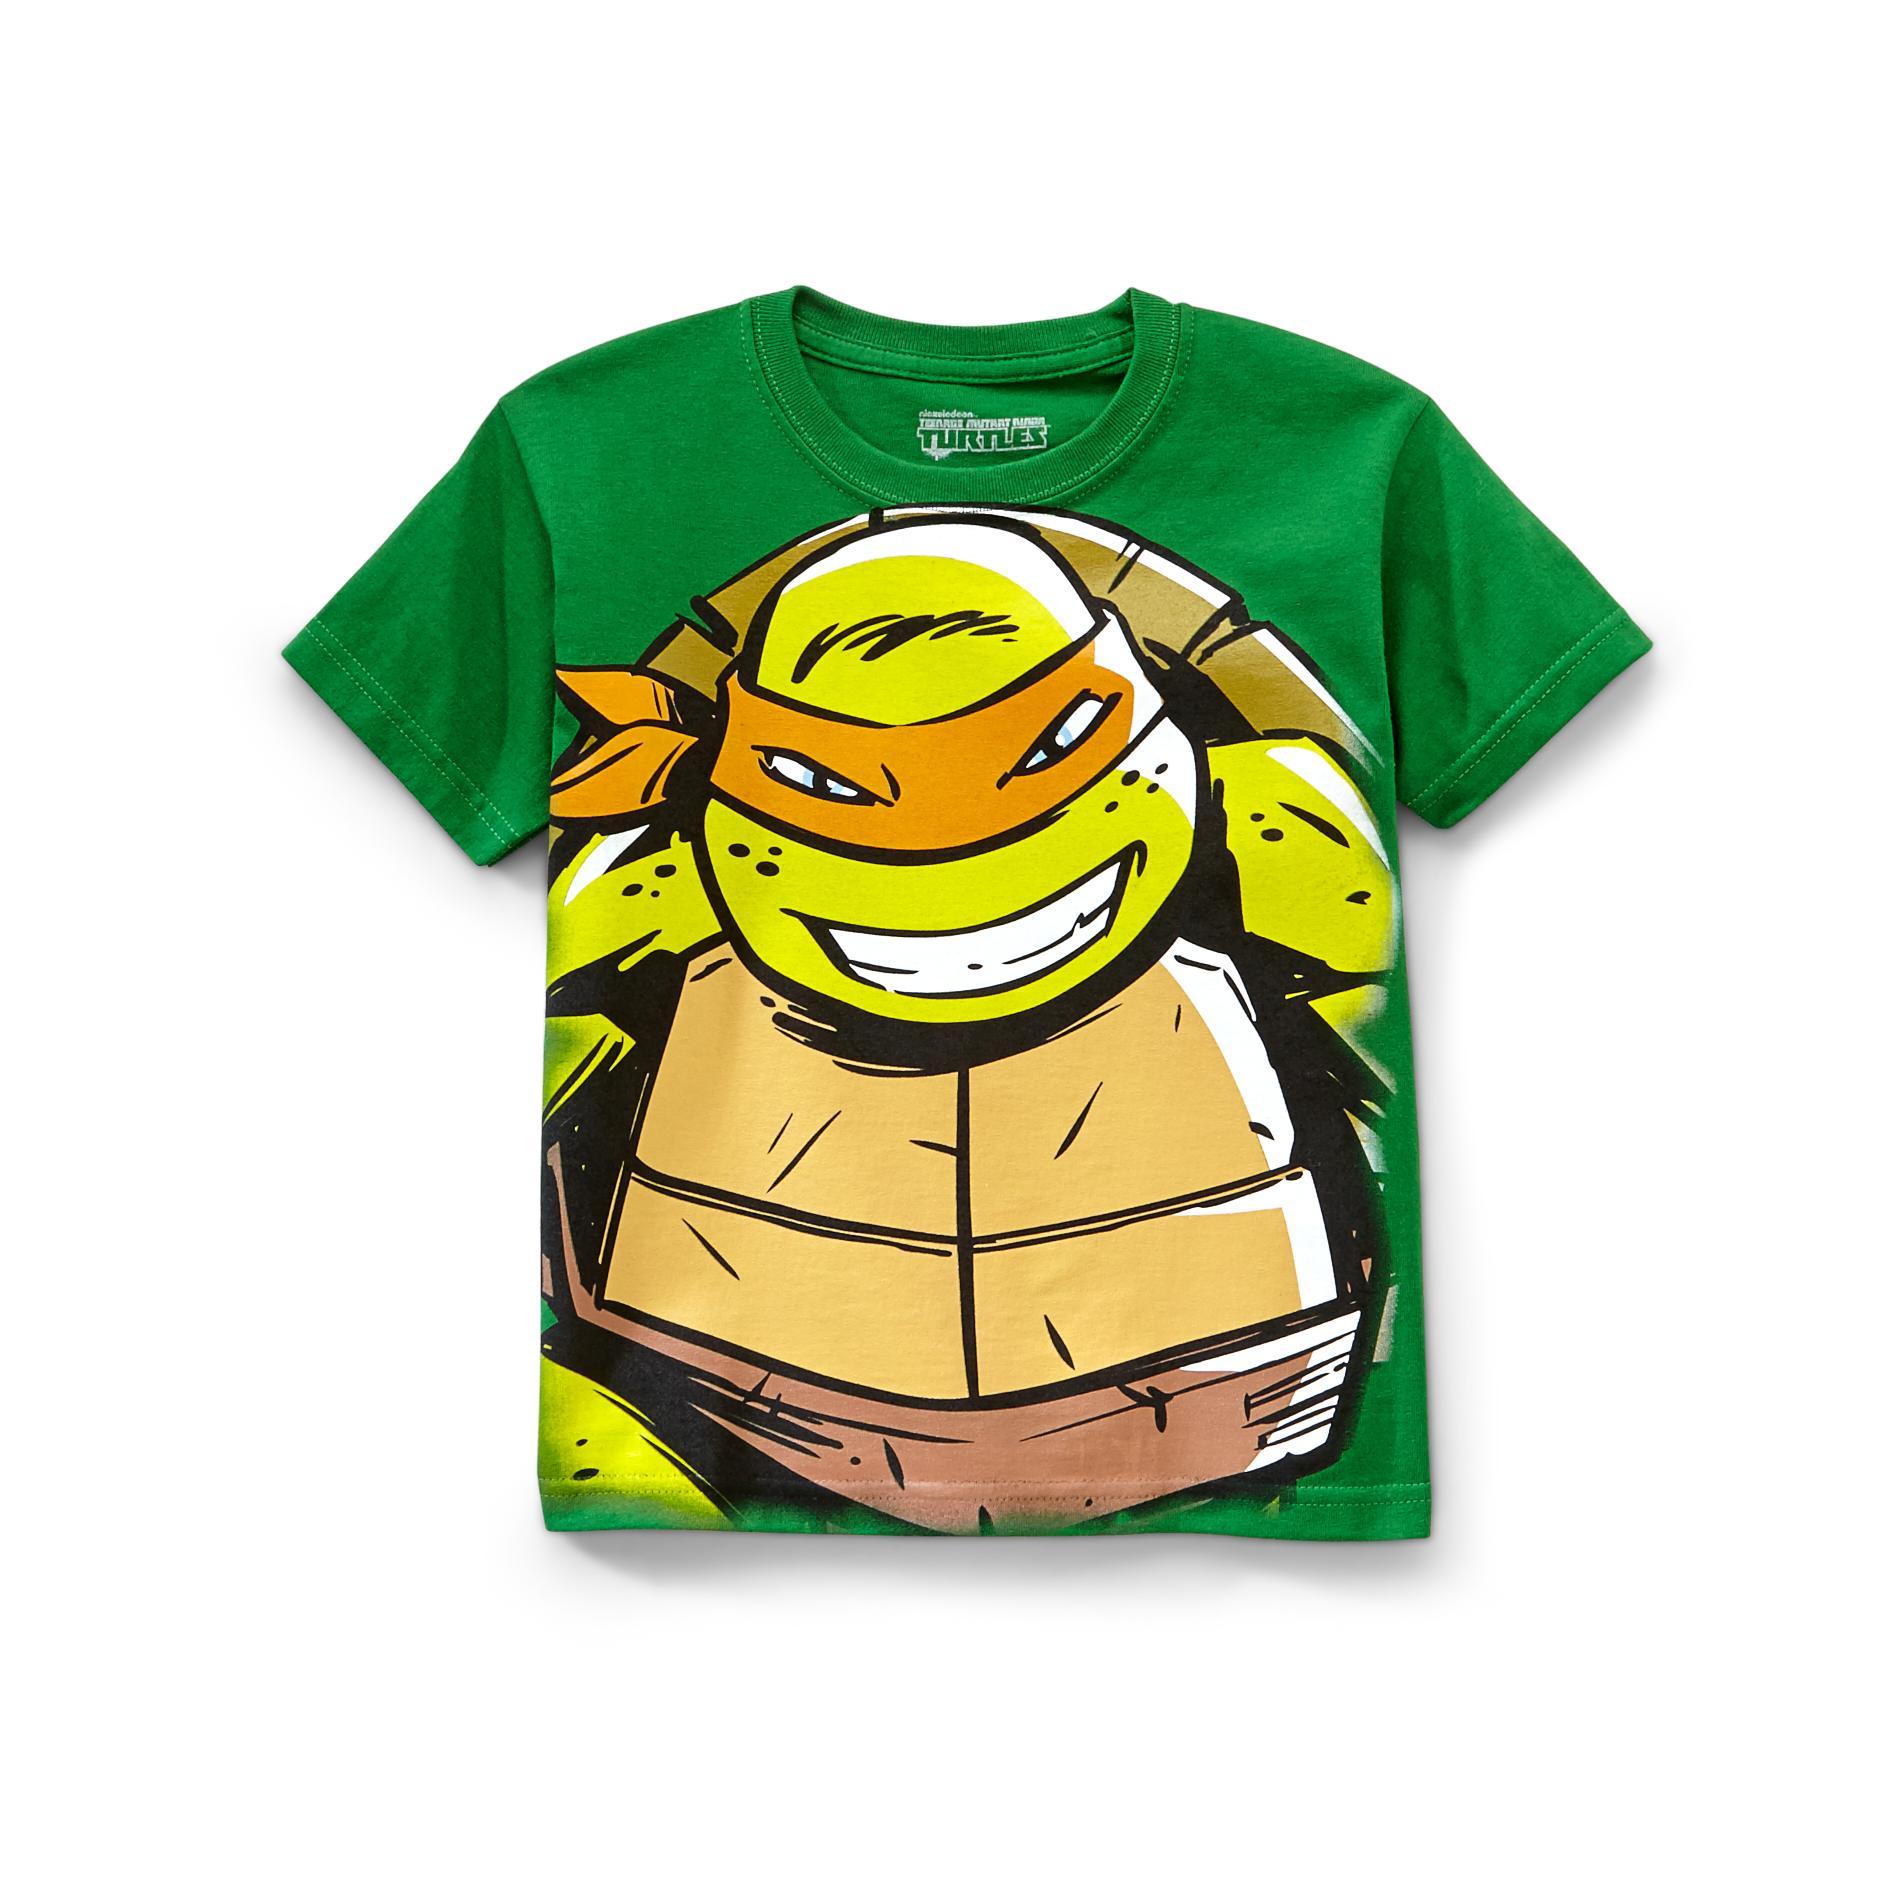 Nickelodeon Boy's Graphic T-Shirt - Teenage Mutant Ninja Turtles